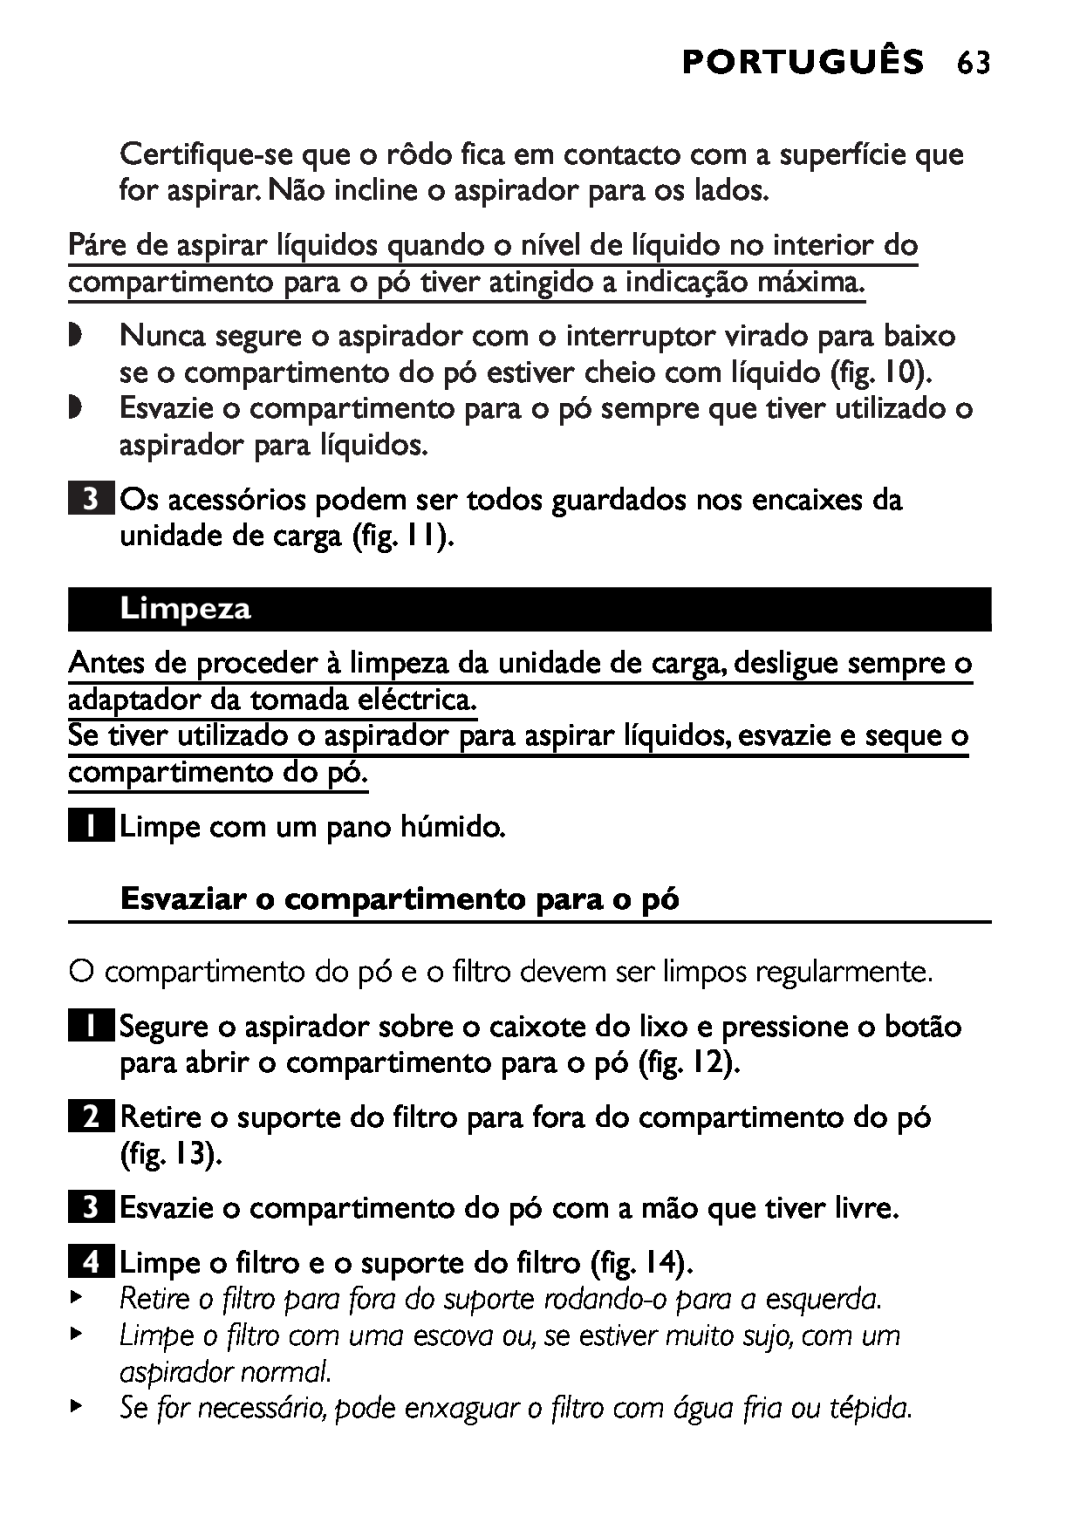 Philips FC6055 manual Limpeza, Esvaziar o compartimento para o pó, Português 